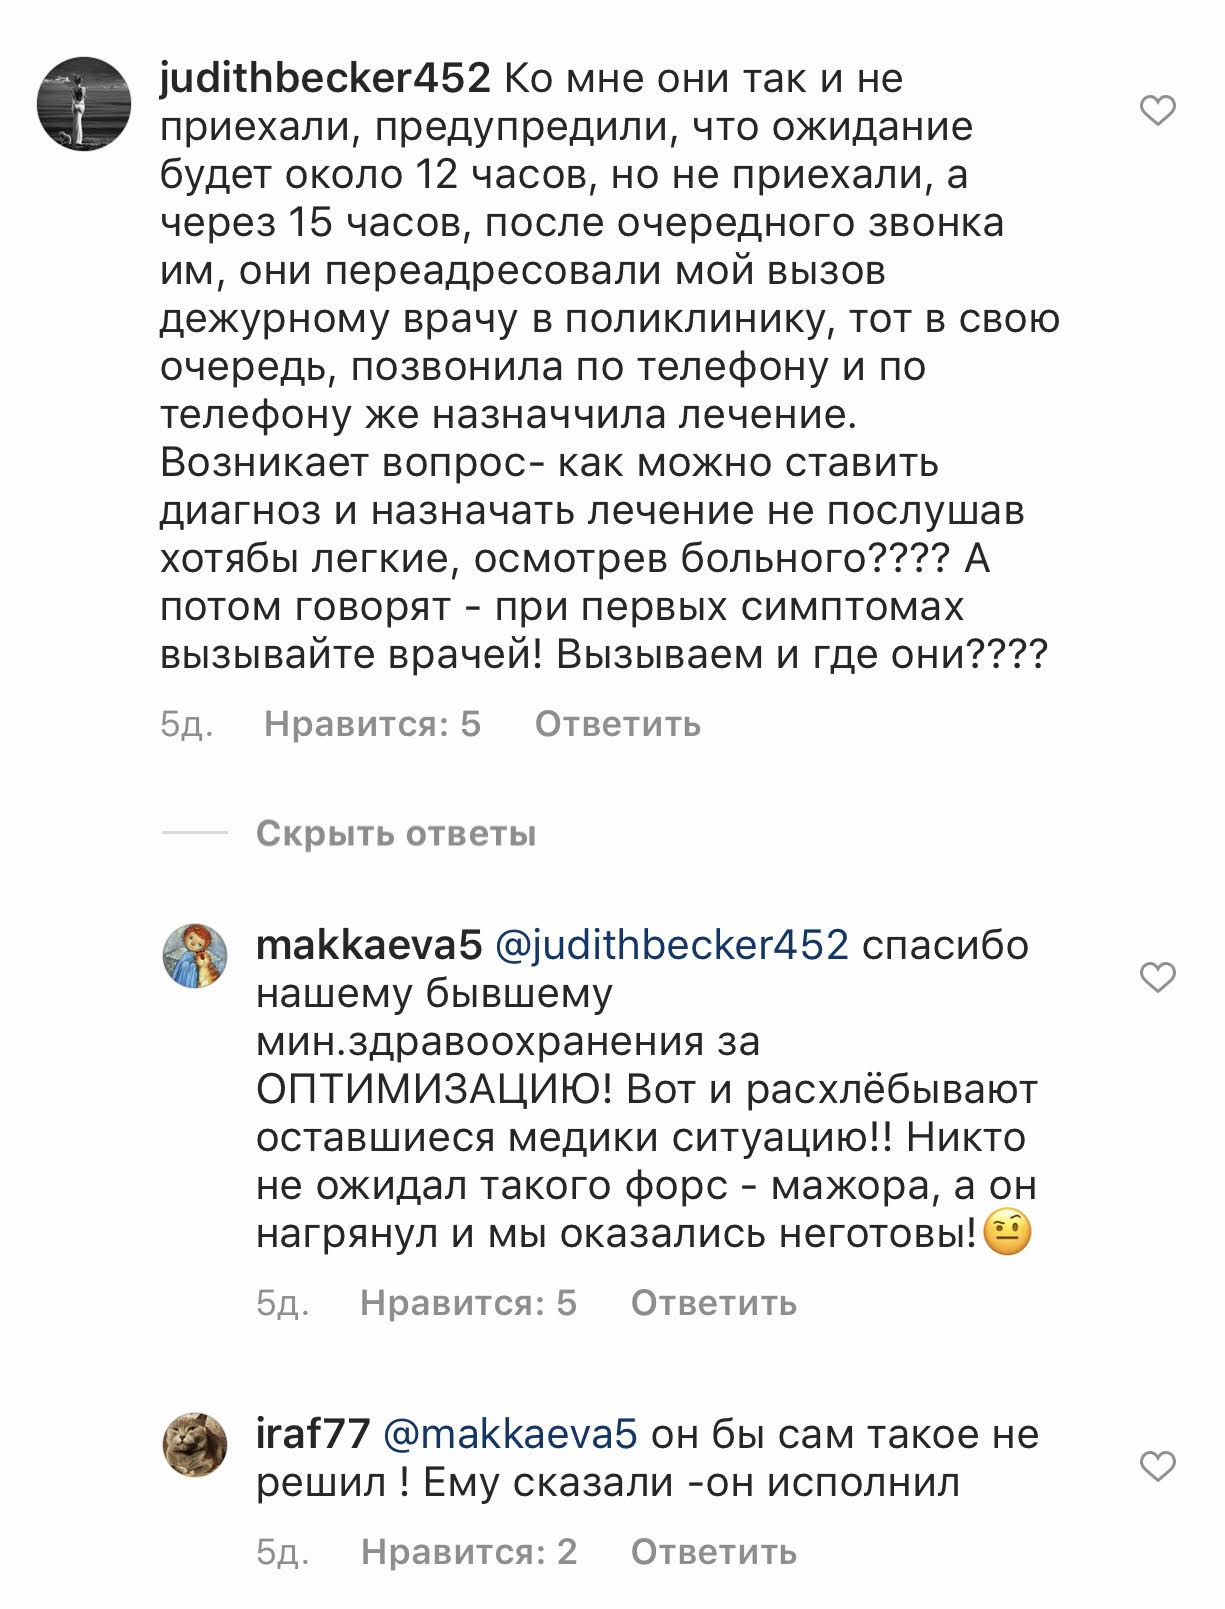 Скриншот комментария в официальном аккаунте главы Северной Осетии в Instagram: https://www.instagram.com/p/CAigzgFANmJ/?utm_source=ig_web_copy_link